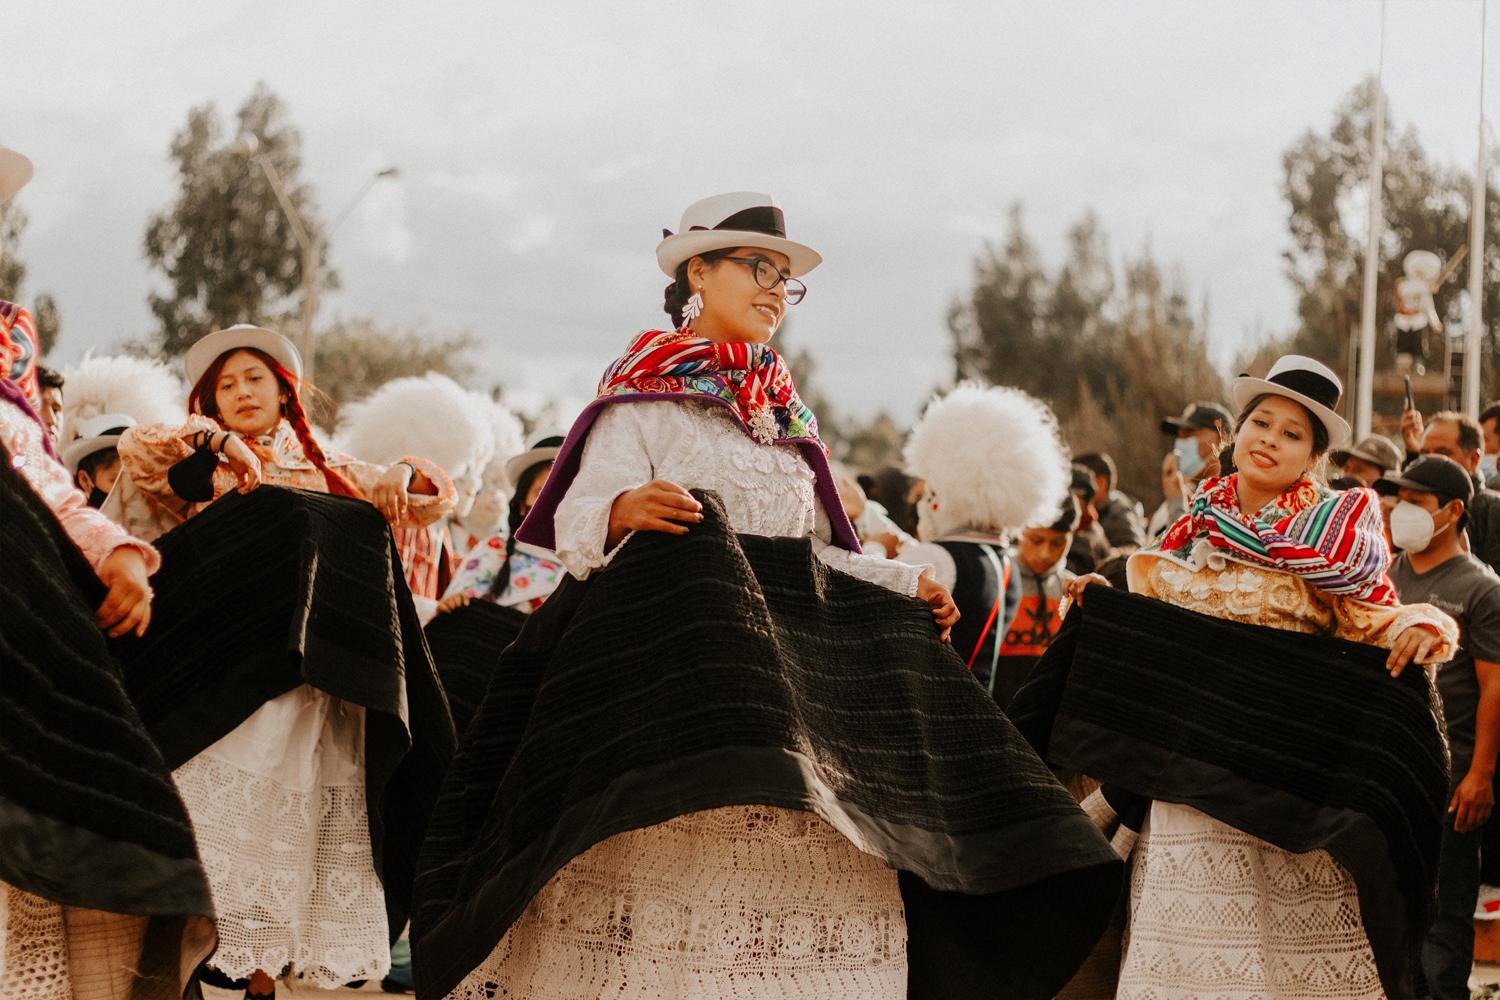 Wprowadzenie do folkloru i znaczenie tradycyjnych tańców w kulturze narodowej